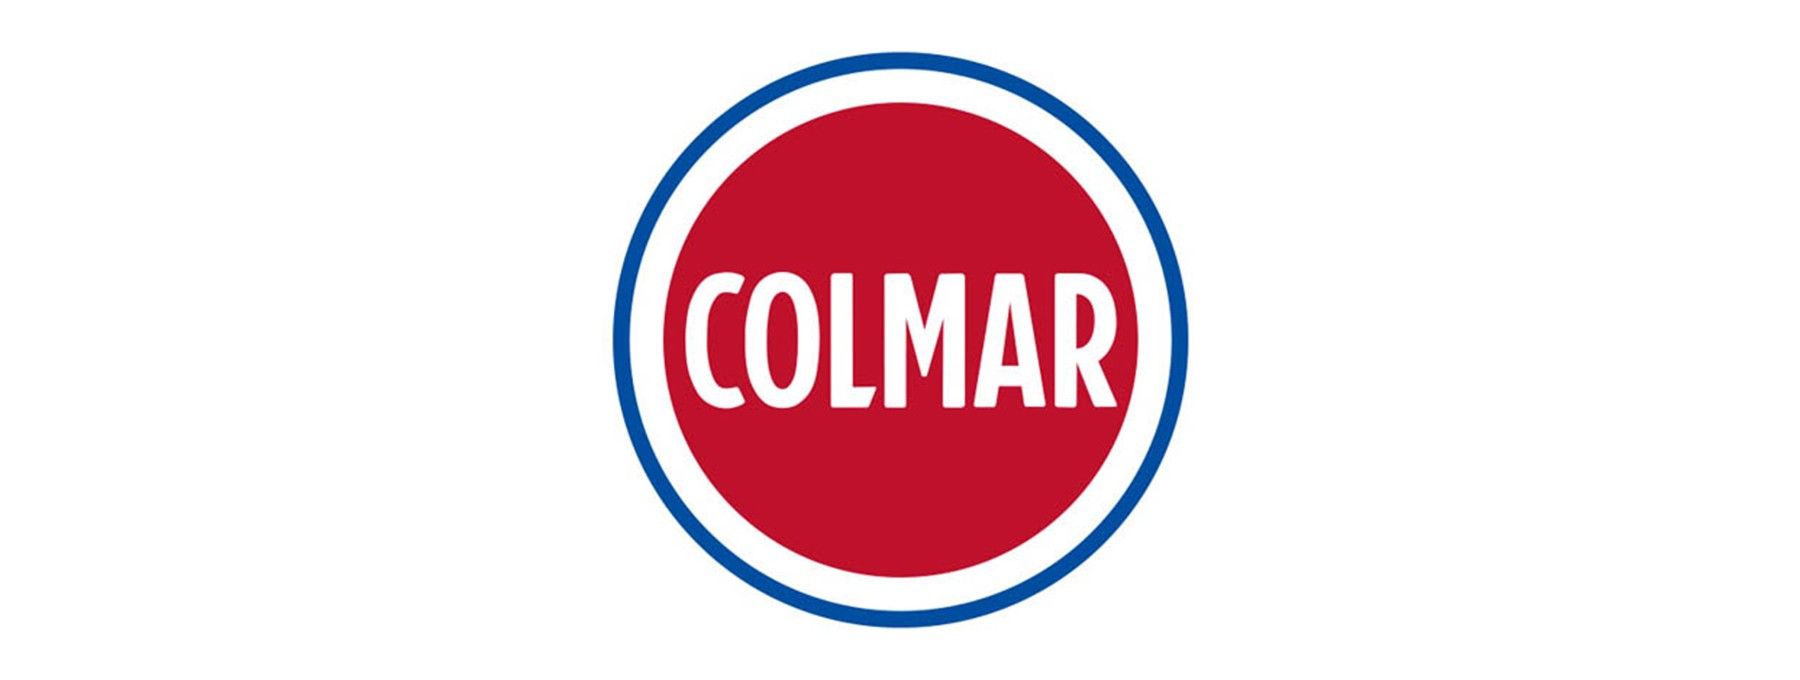 COLMAR Products - Antoniadis Stores